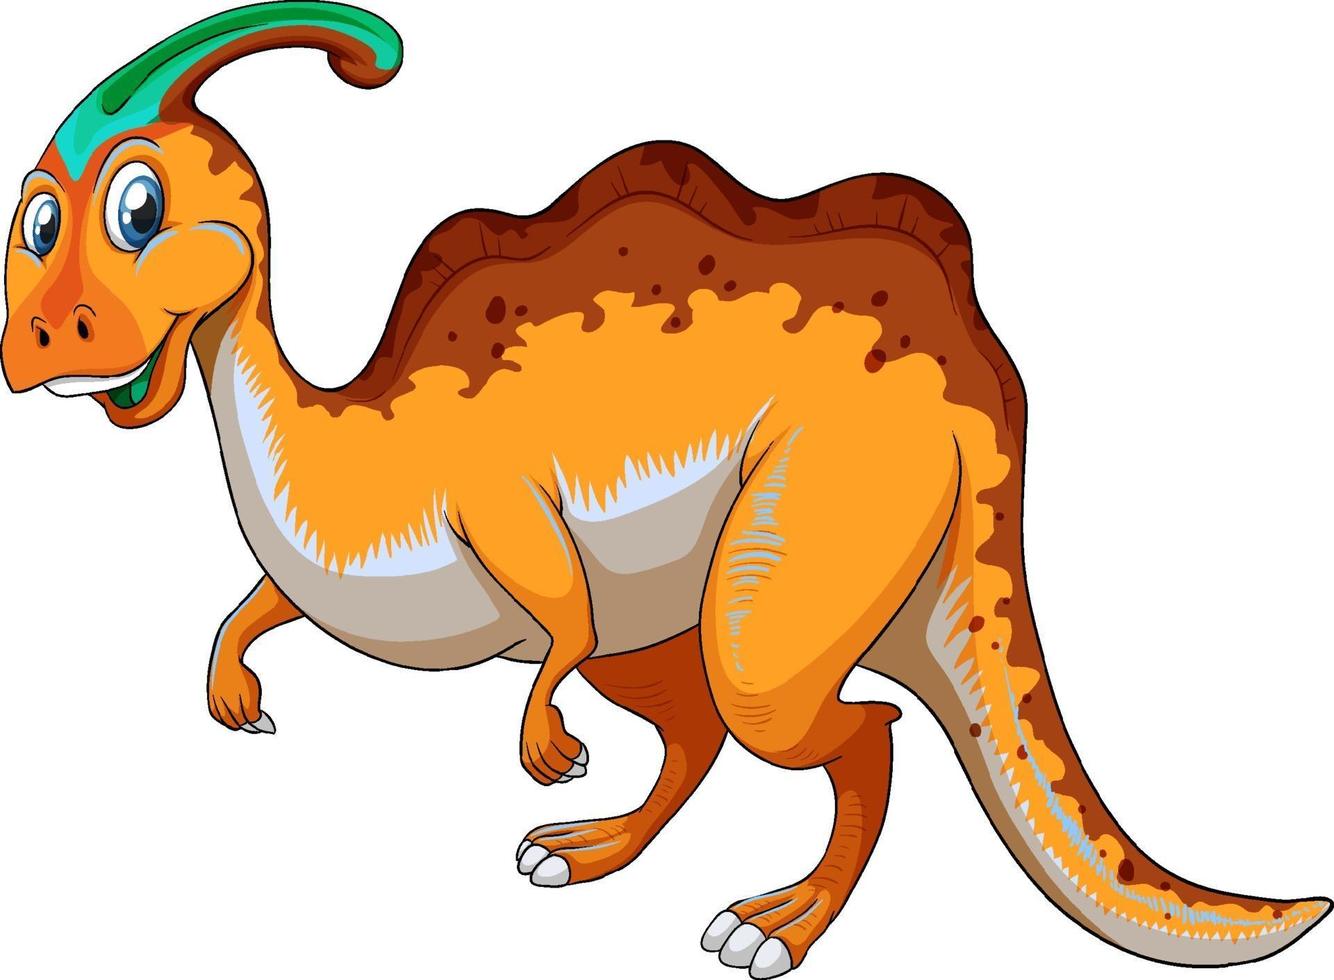 un personnage de dessin animé de dinosaure parasaurus vecteur